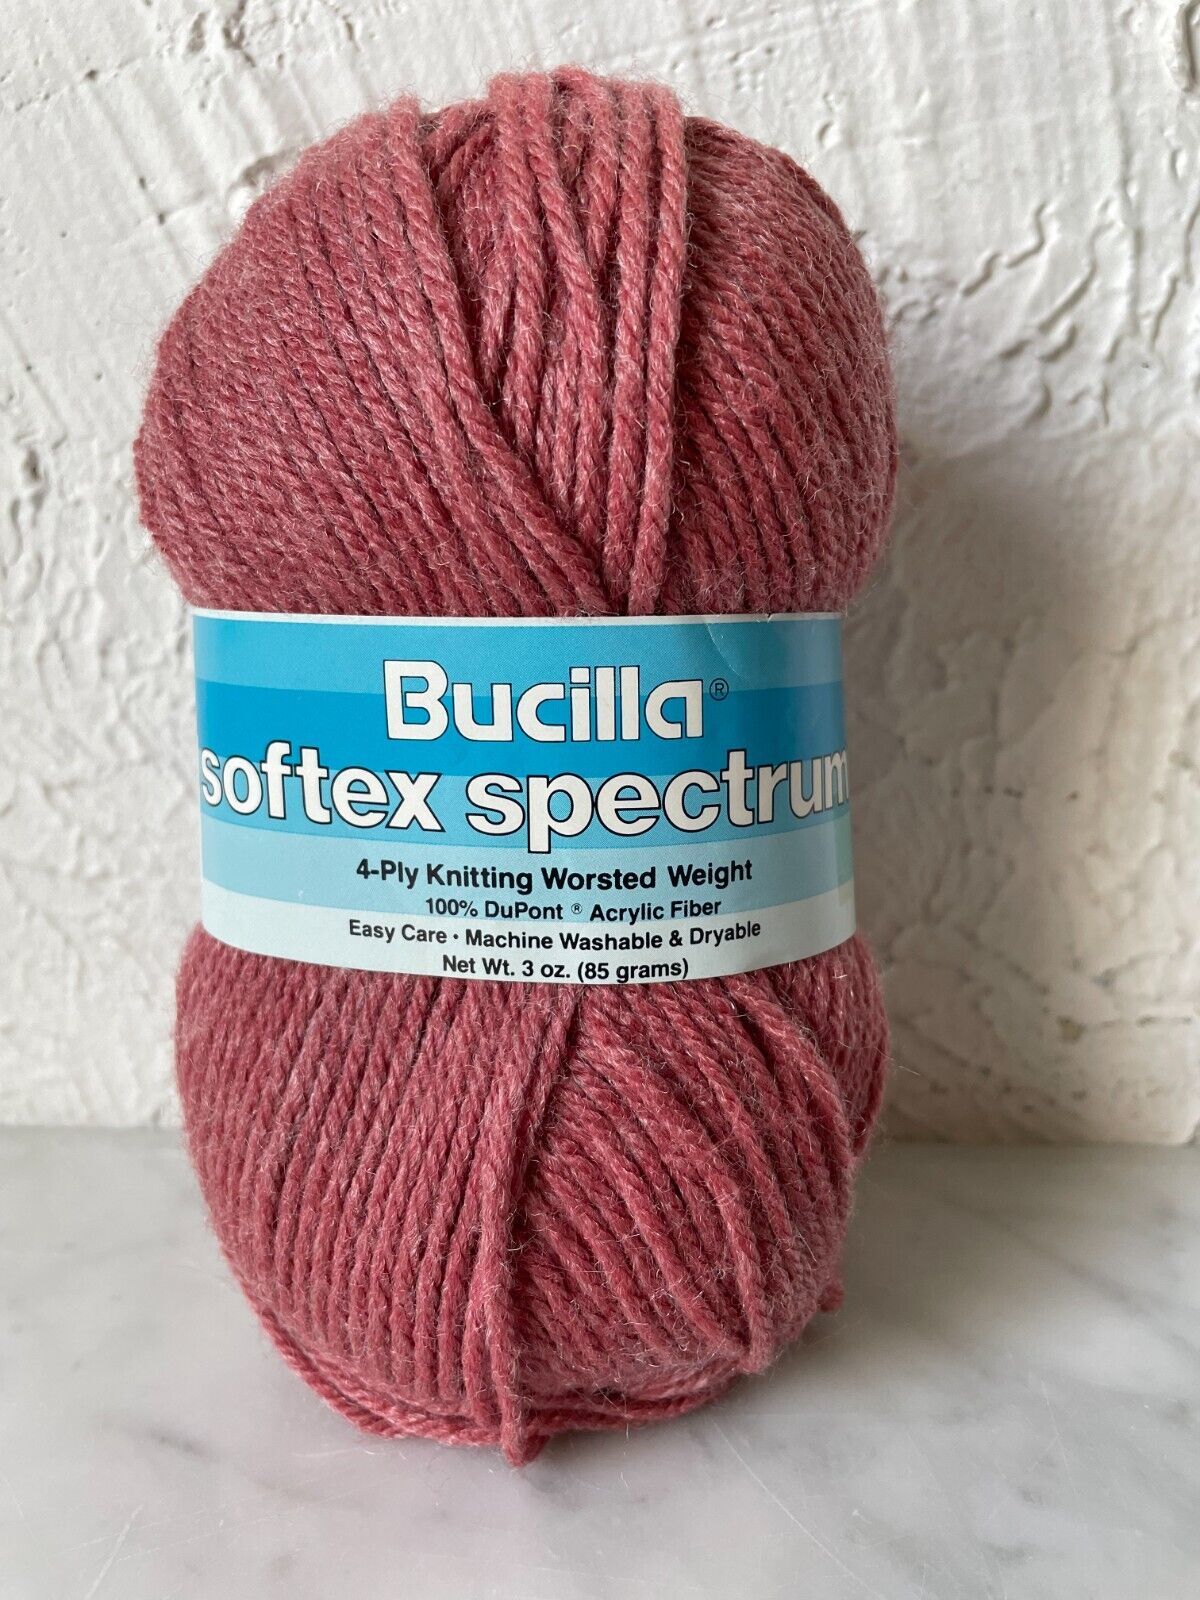 Vintage Bucilla Softex Spectrum 4 Ply Worsted Weight Yarn - 1 Skein Rose #1393 - $5.65